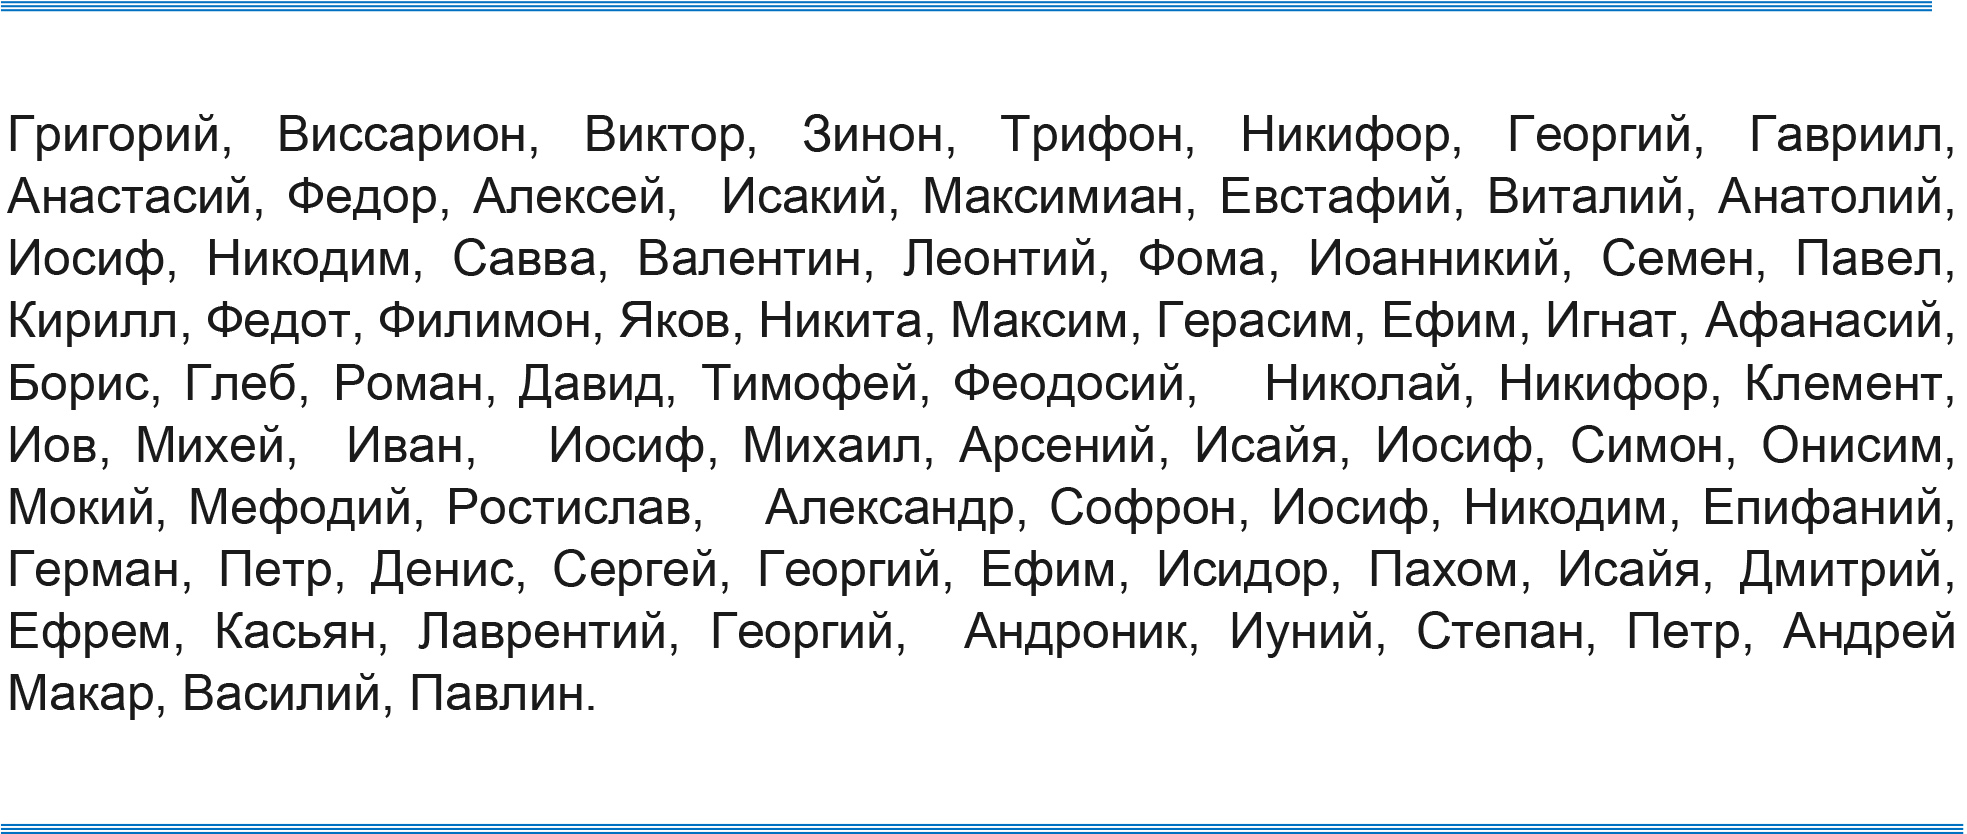 Называйте детей русскими именами